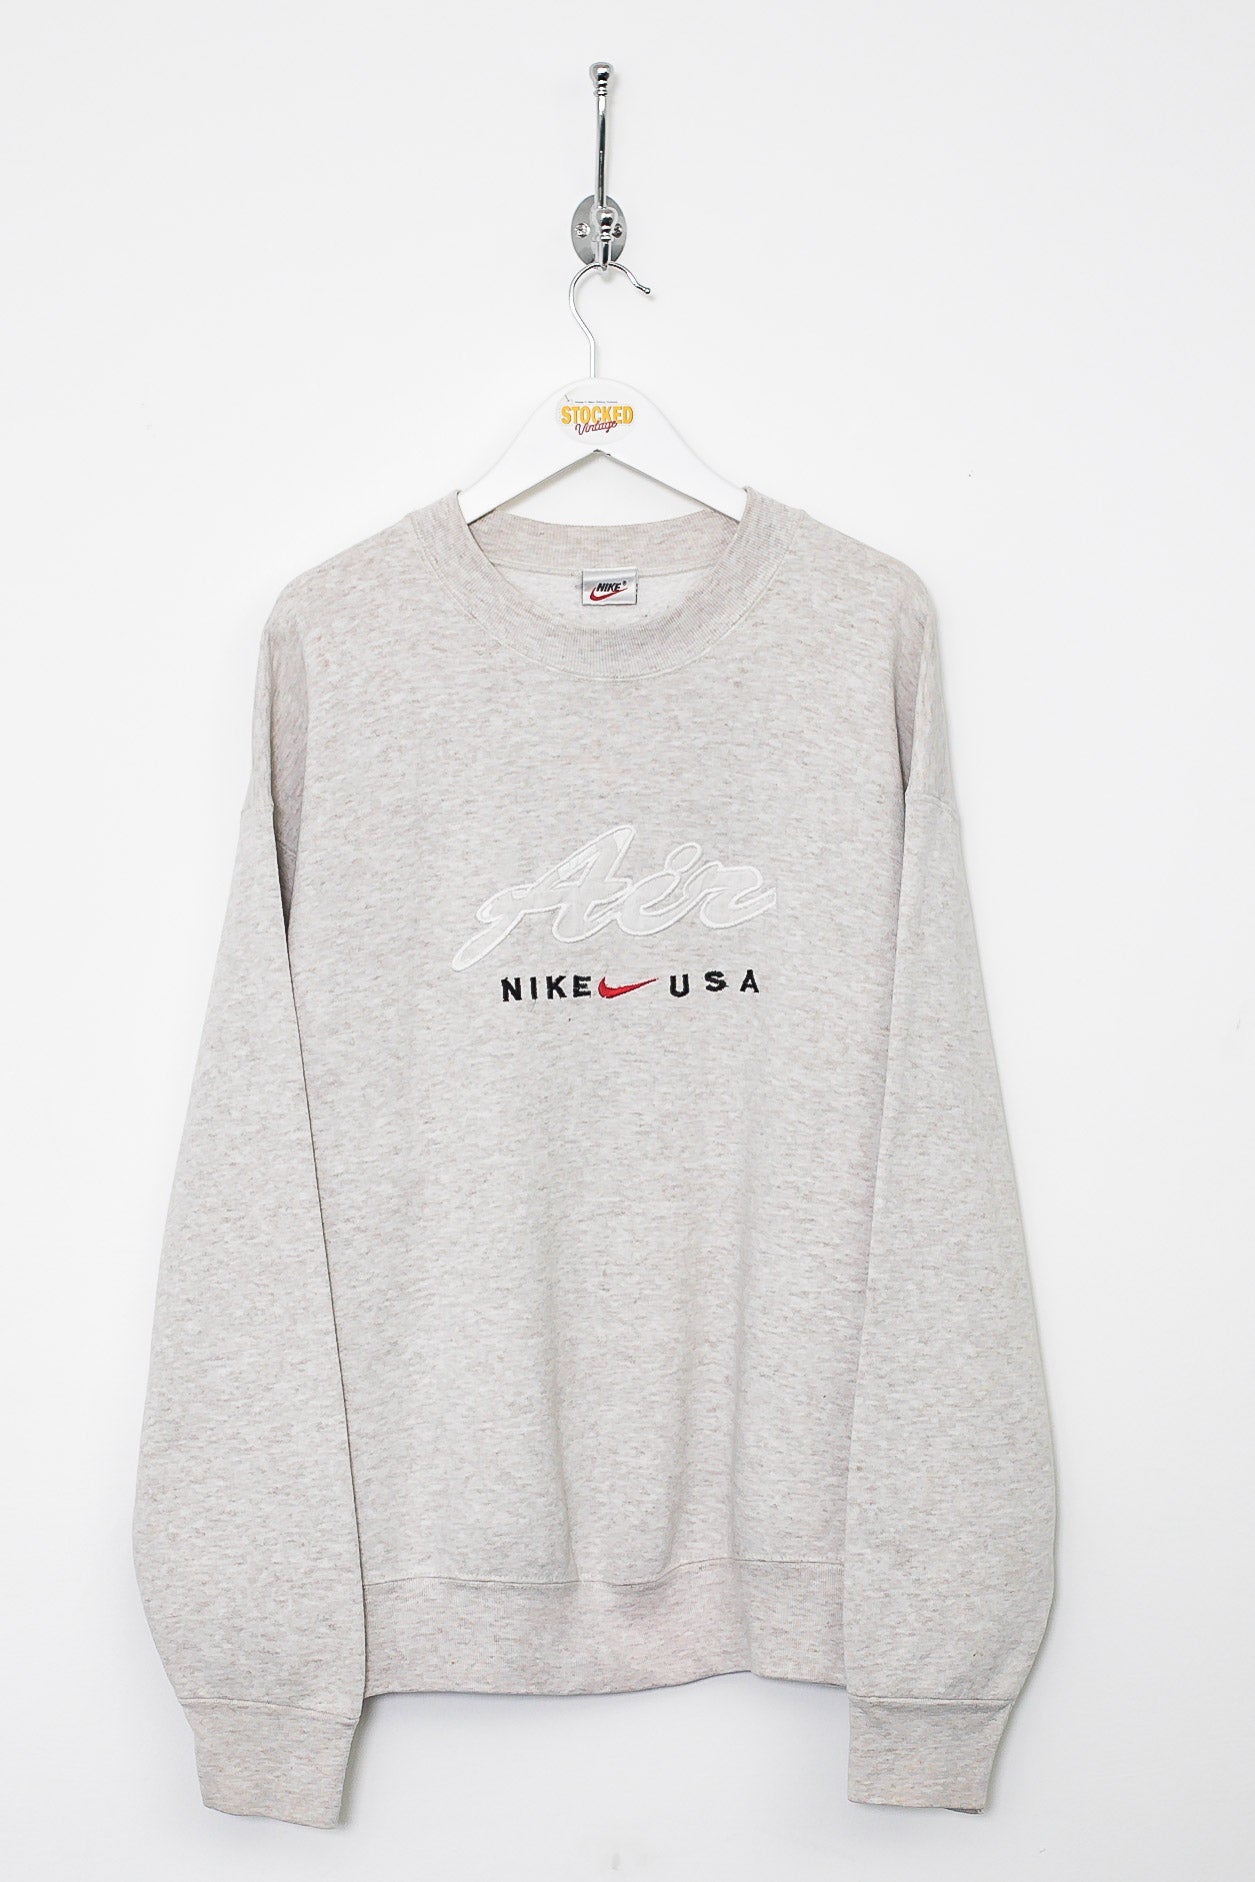 90s Nike Sweatshirt (L) – Stocked Vintage